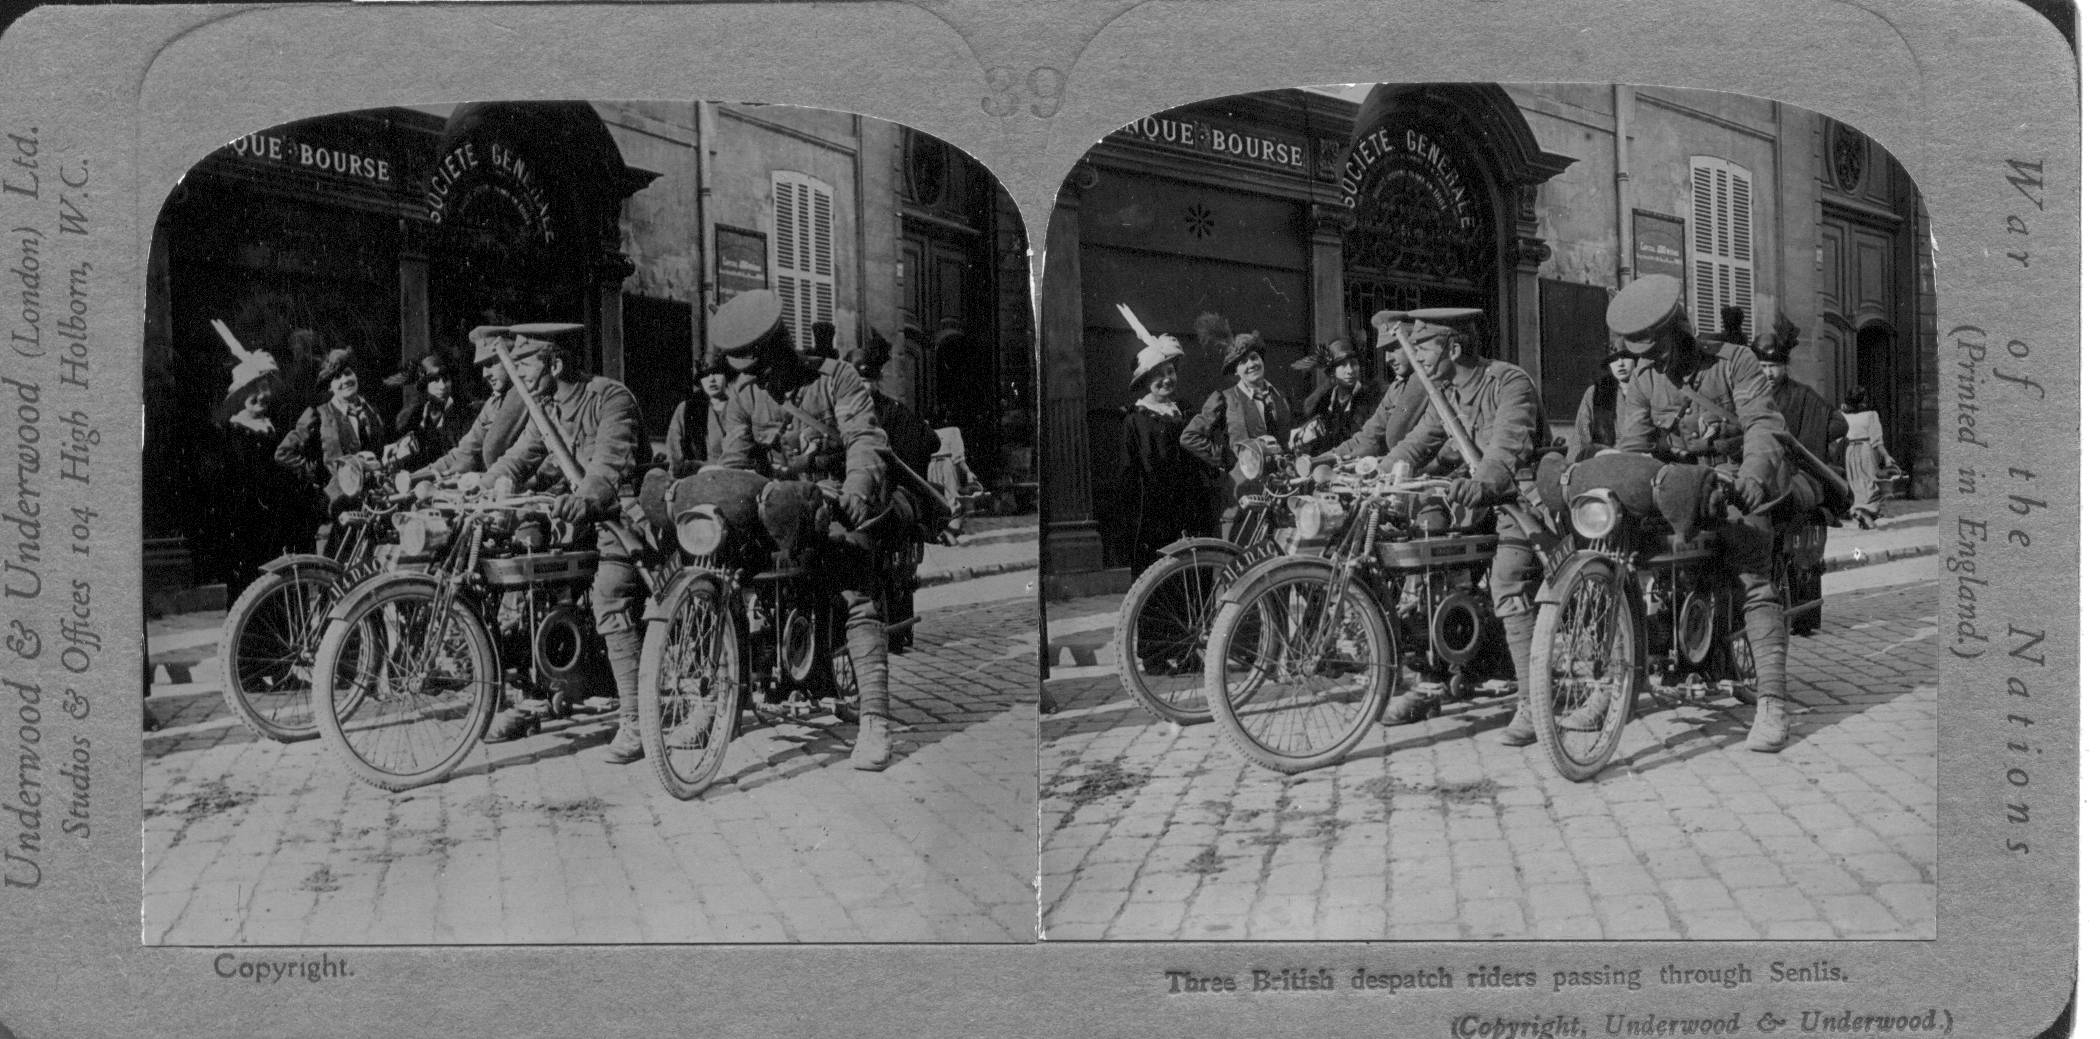 Three British despatch riders passing through Senlis